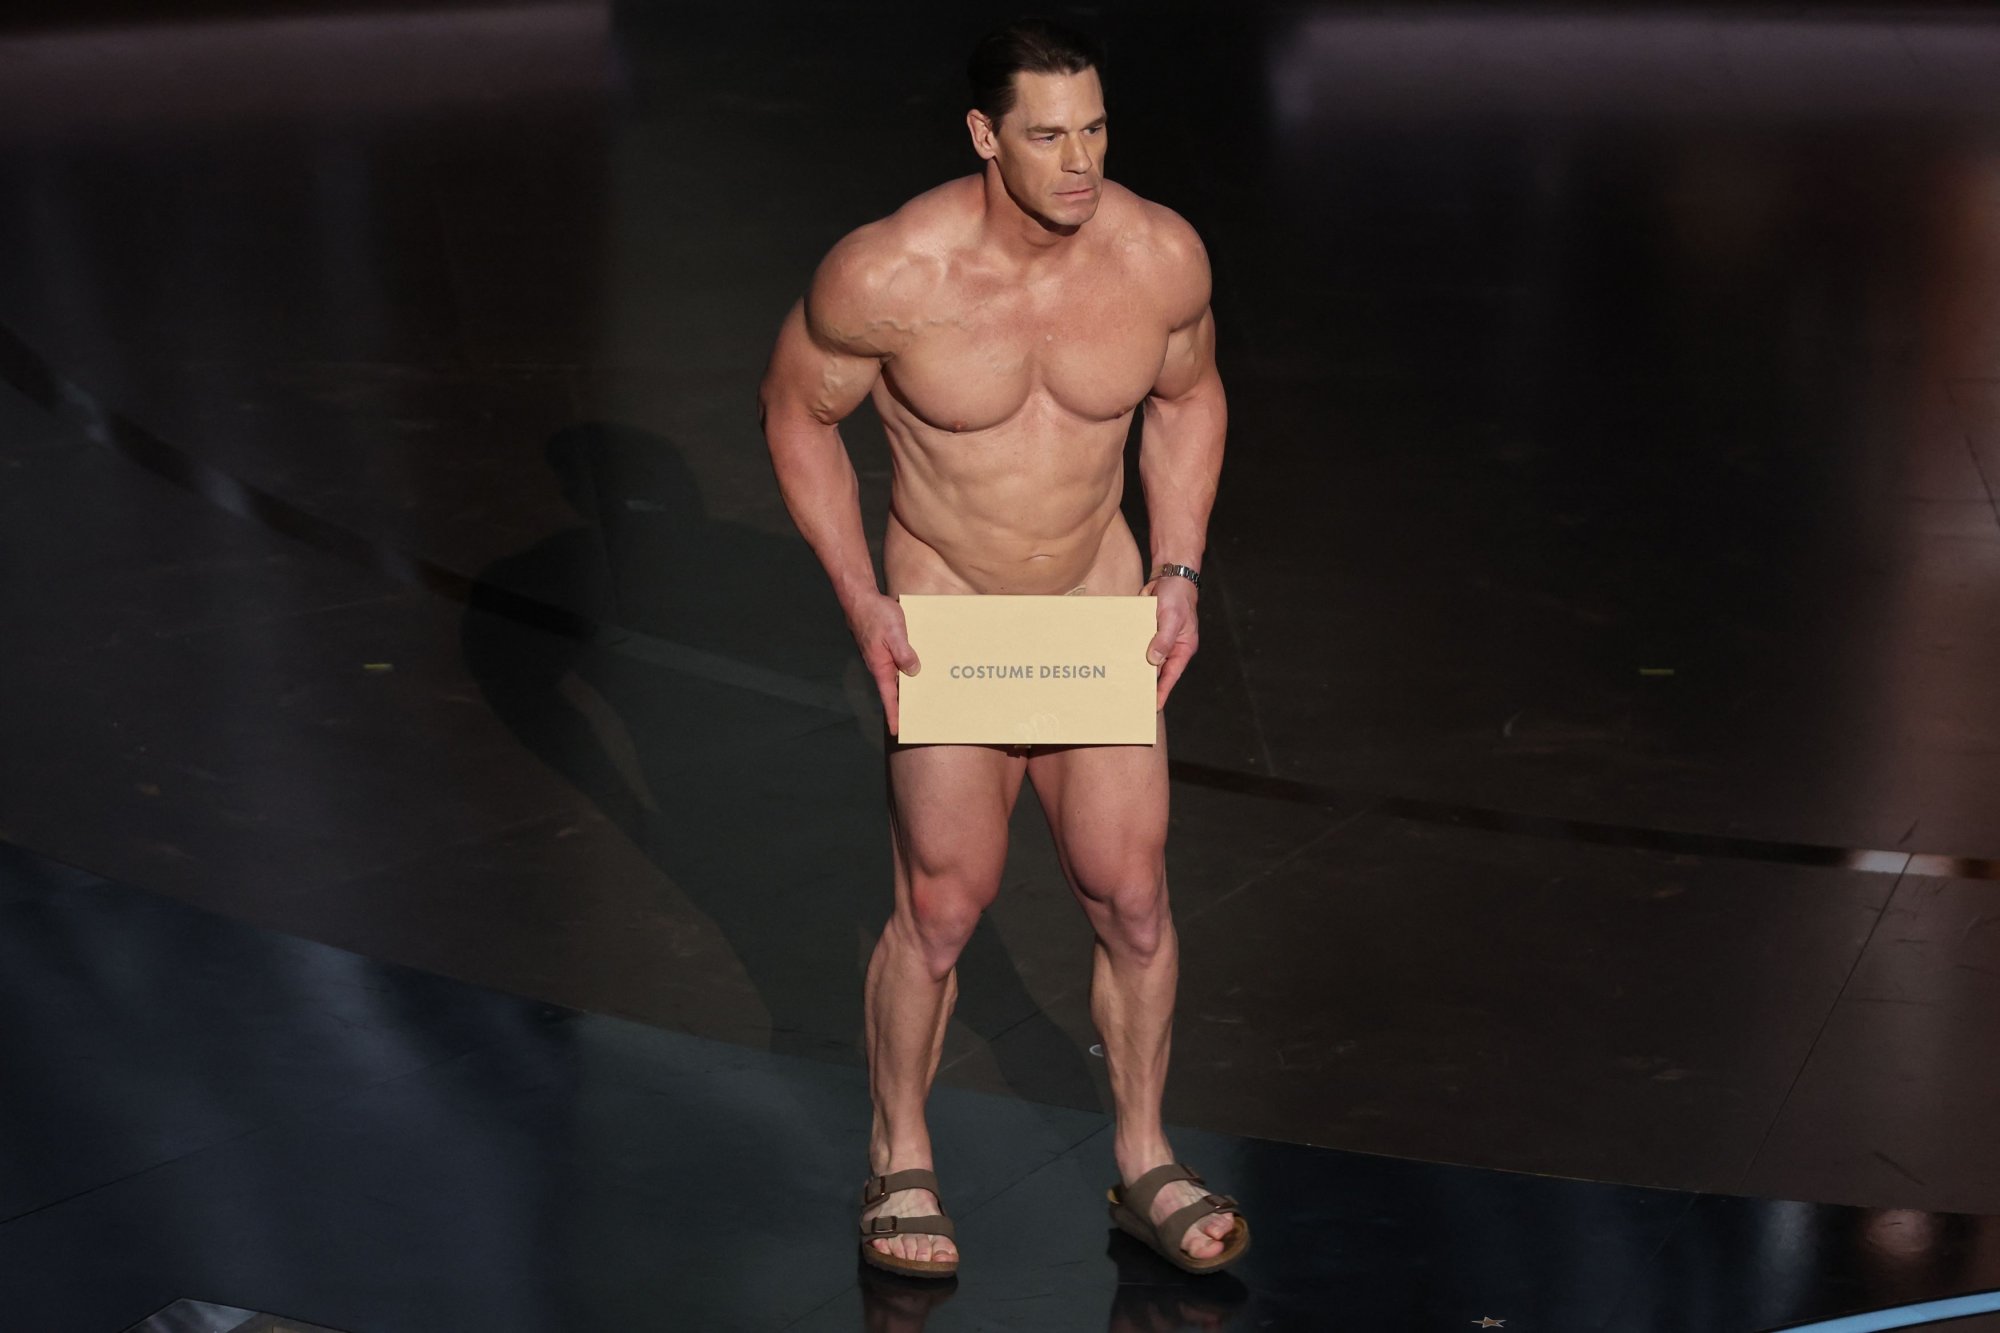 Ο John Cena βγήκε γυμνός στα Όσκαρ - Η στιγμή που τον ντύνουν επί σκηνής